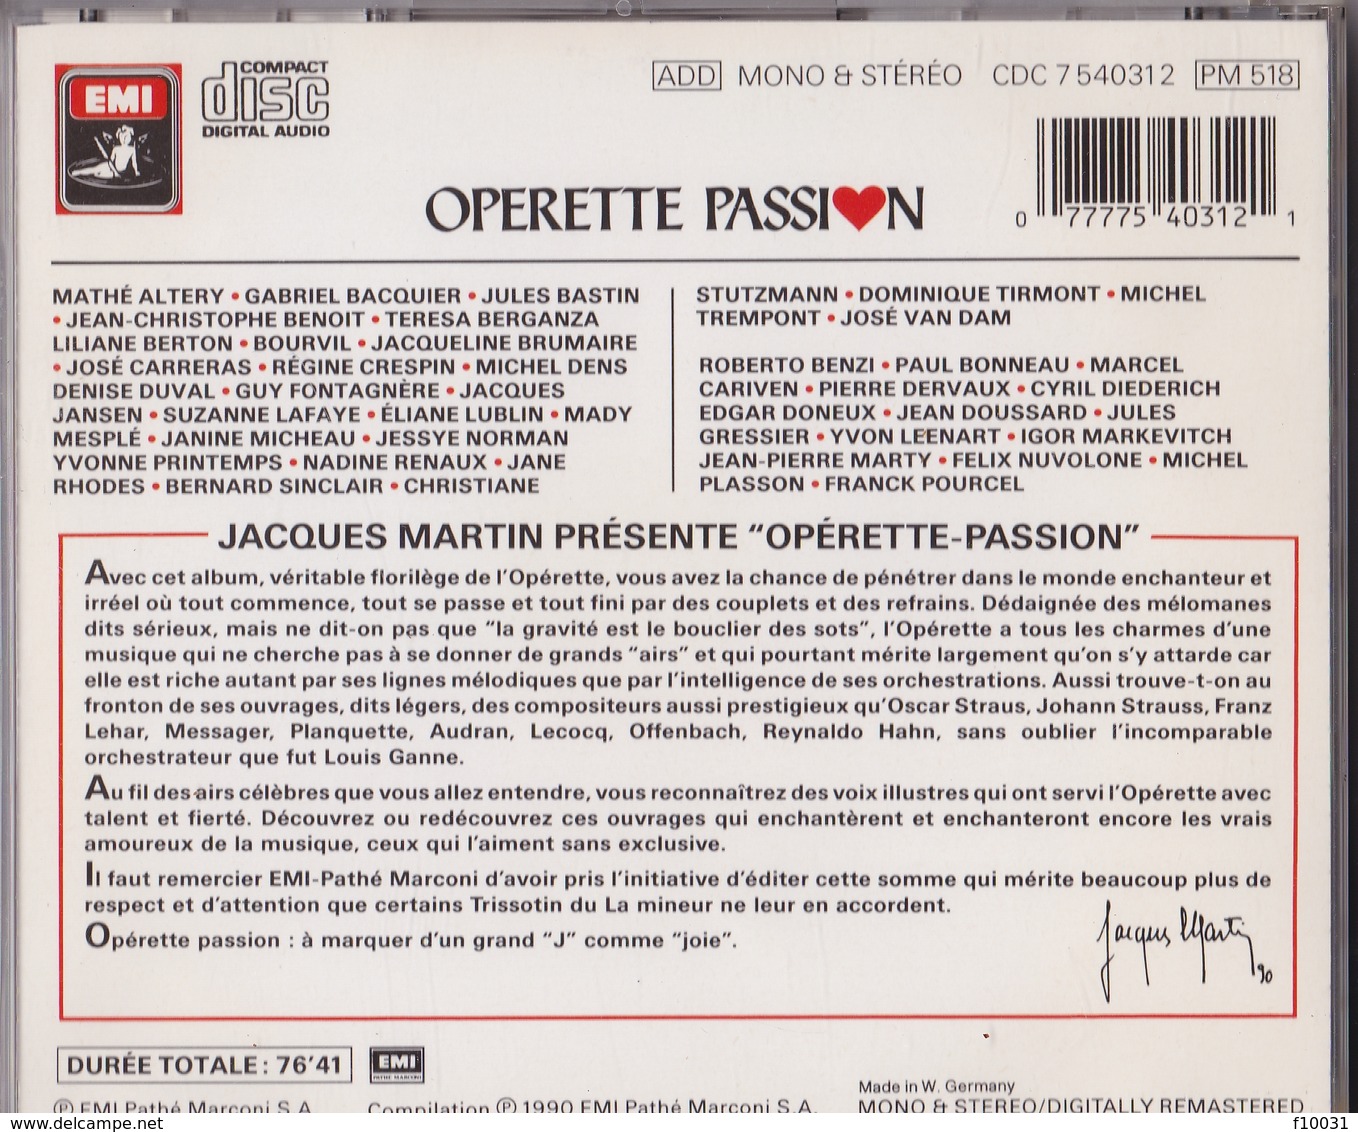 OPERETTE PASSION - Oper & Operette